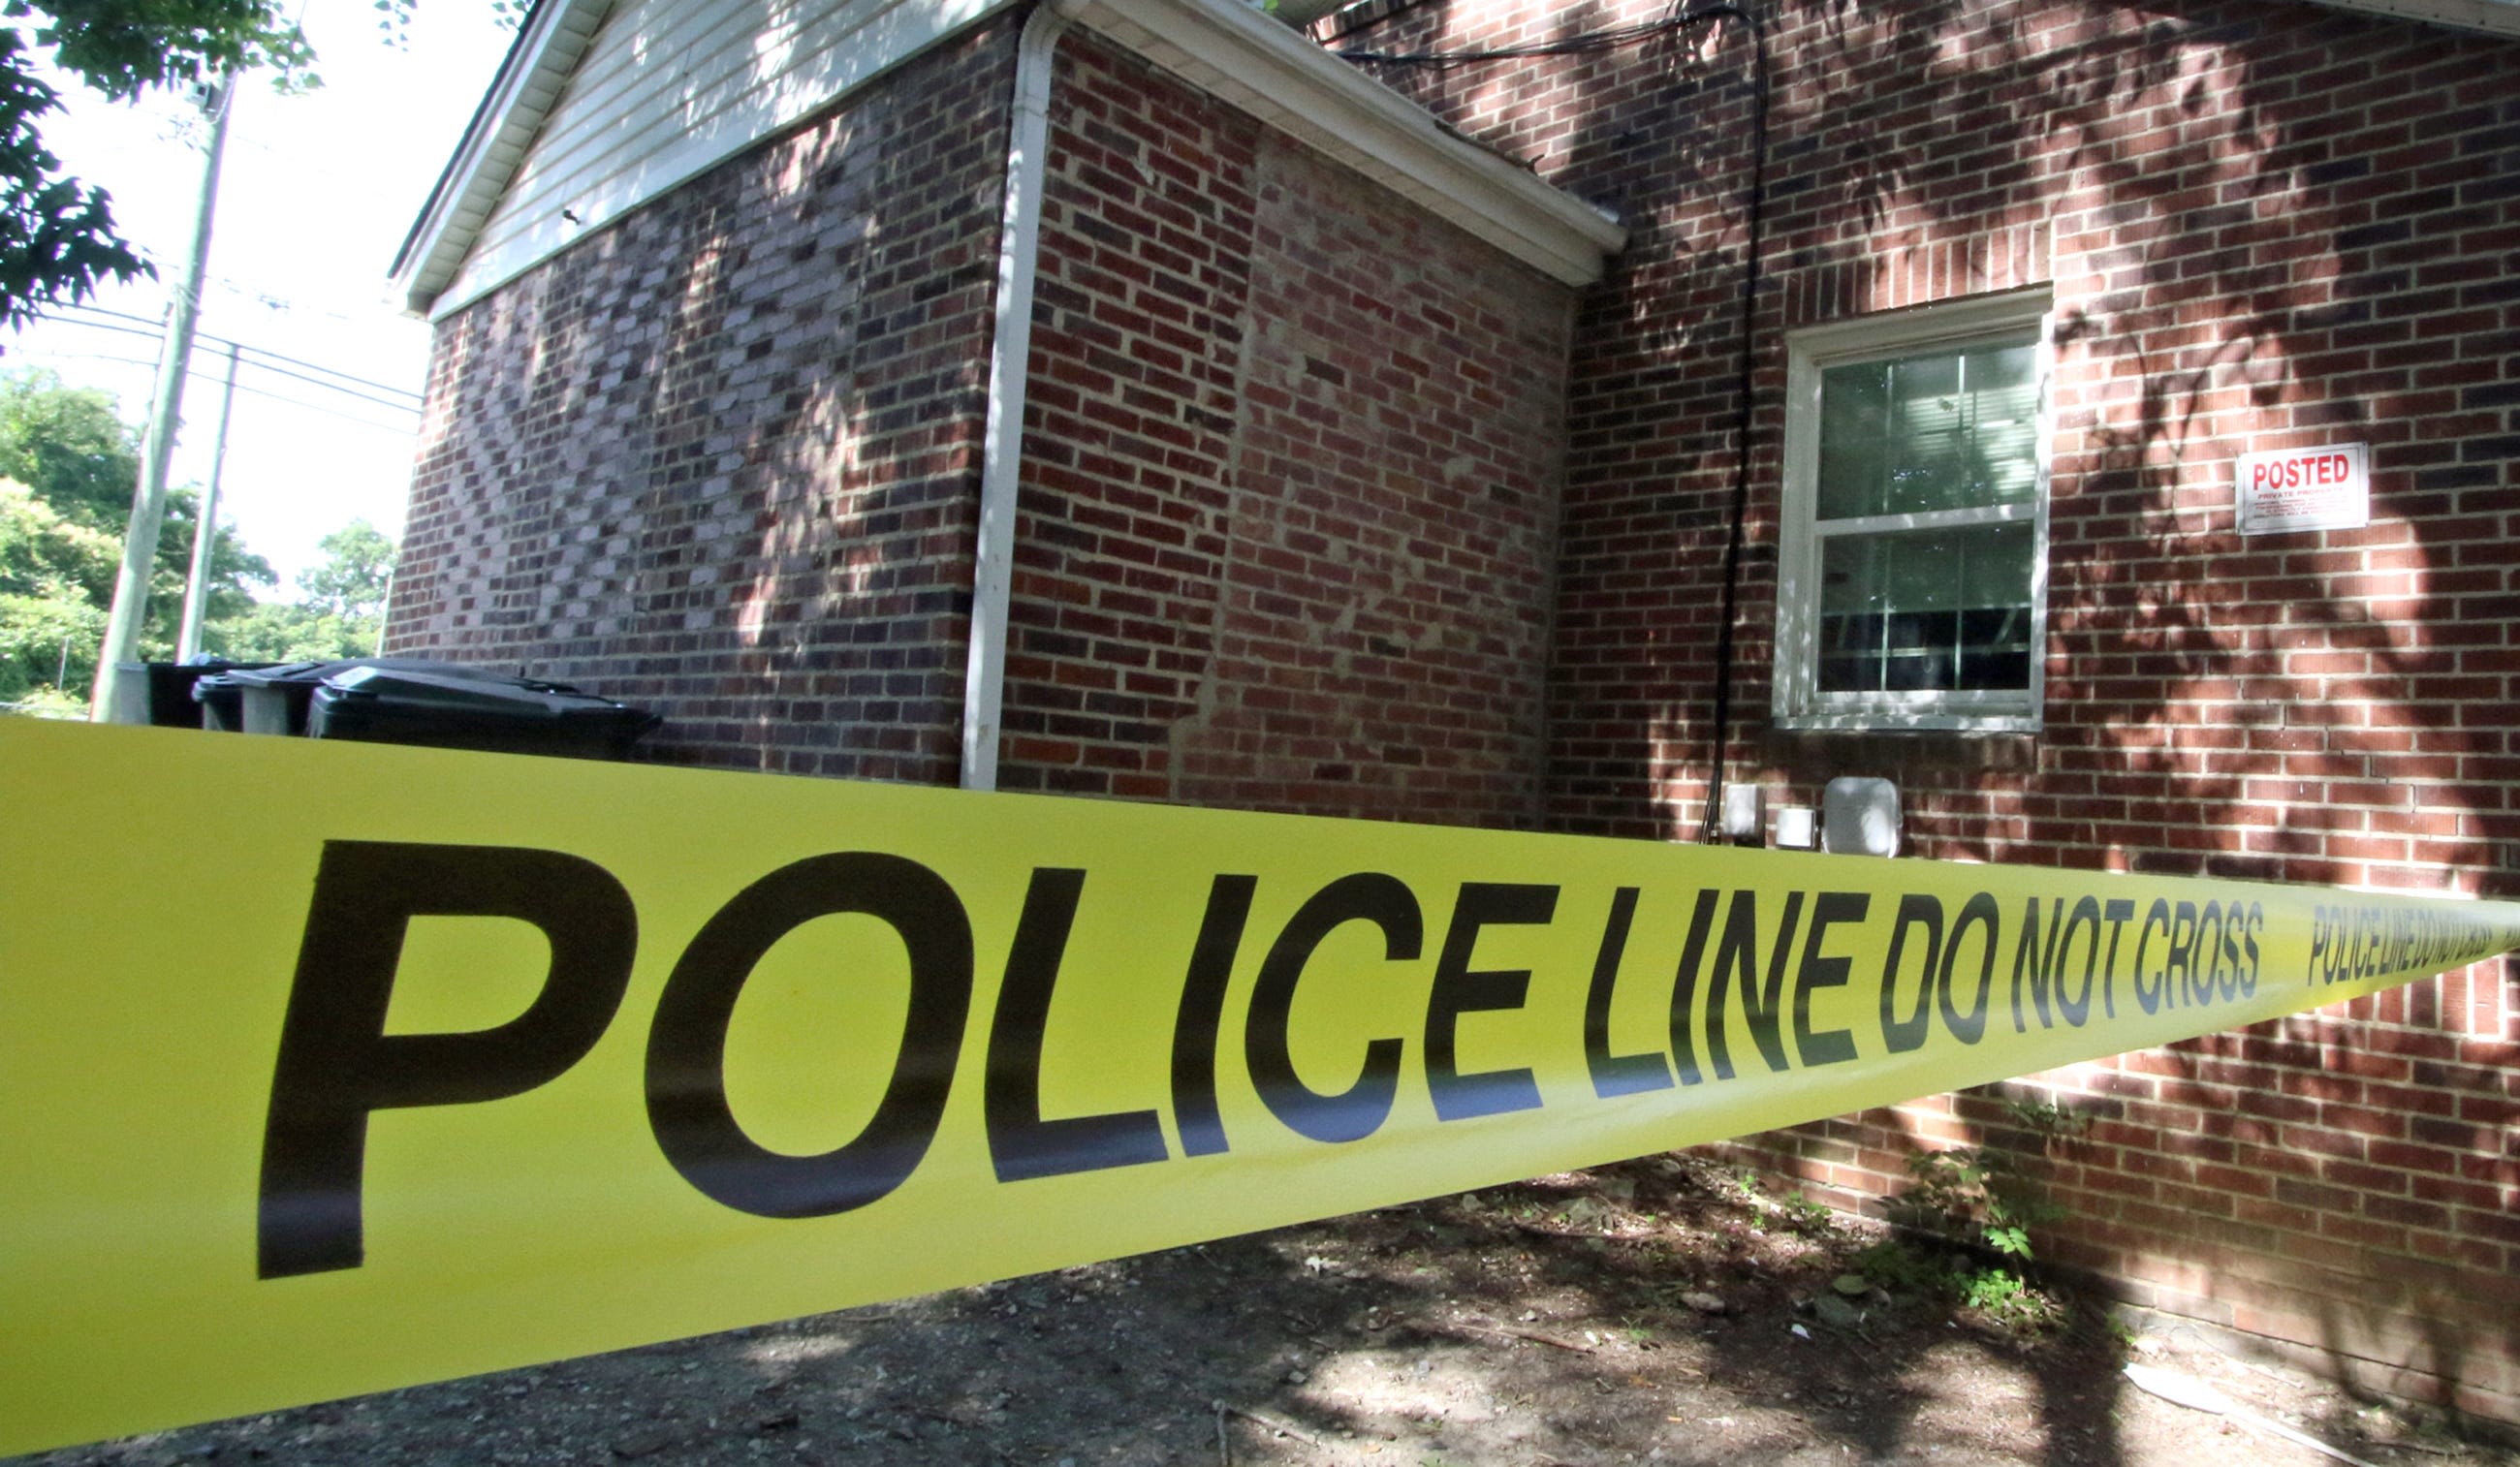 Police identify man, woman killed in murder-suicide in Belmont